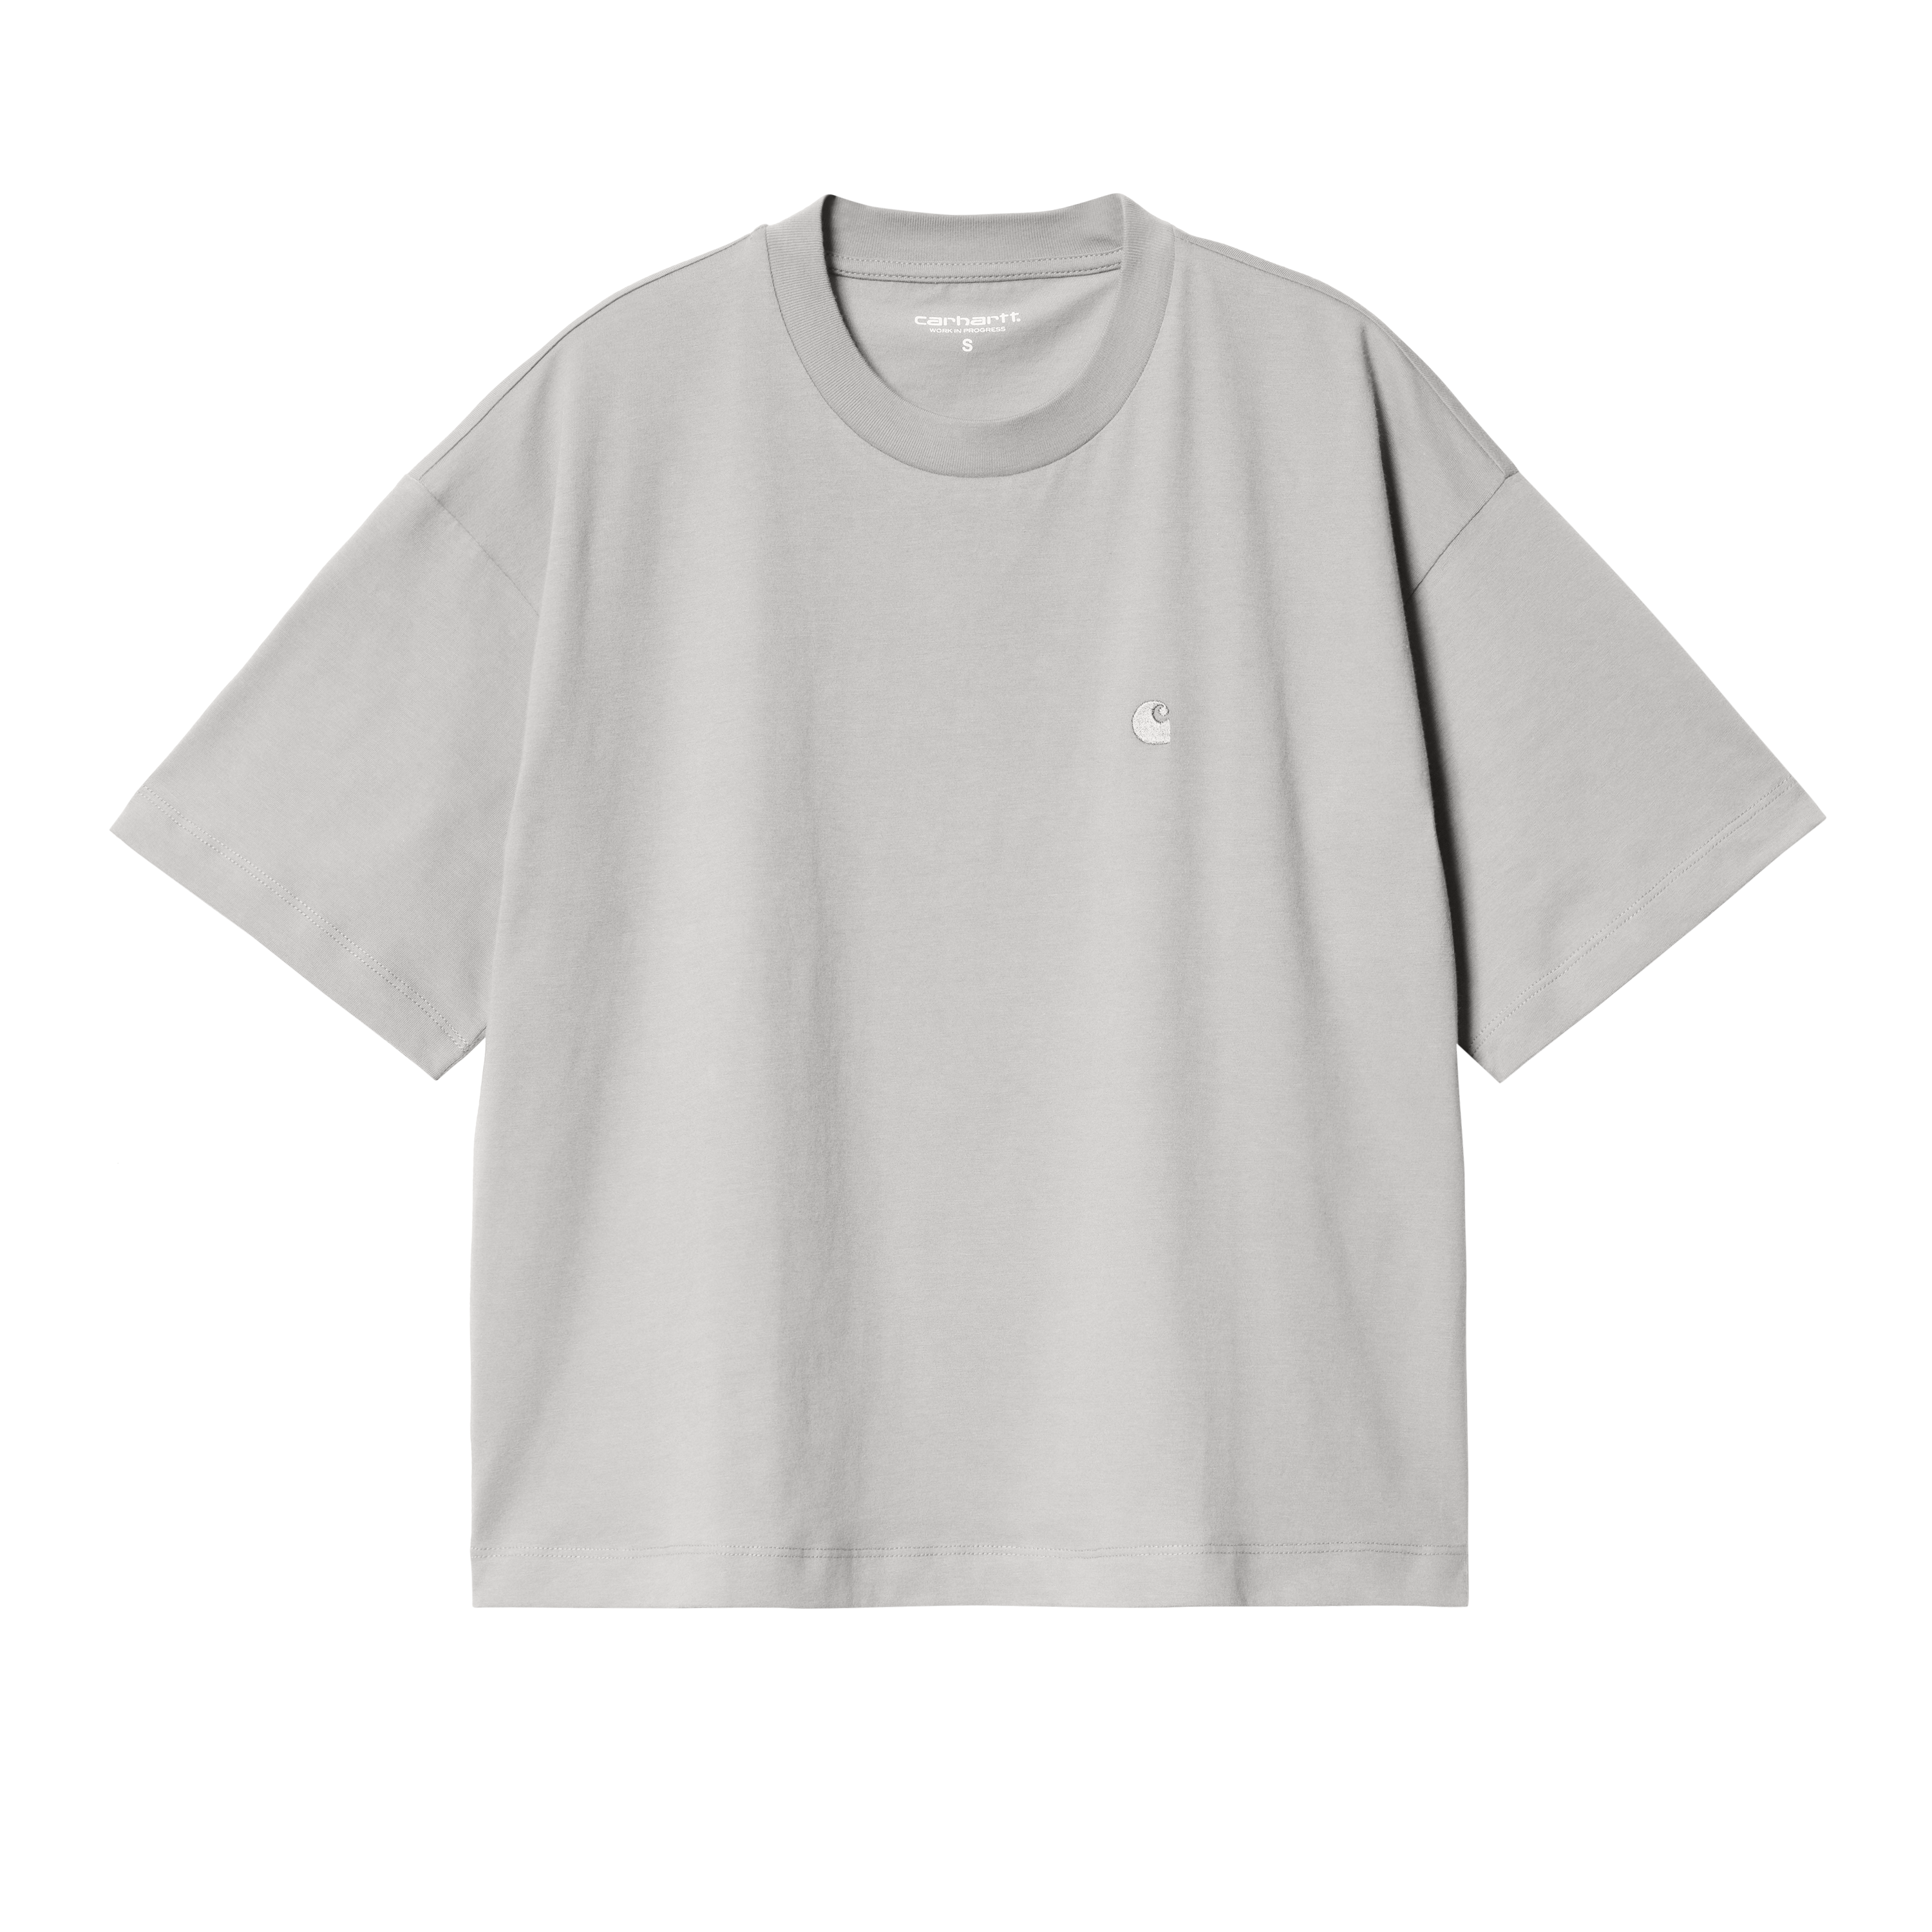 Carhartt WIP Women’s Short Sleeve Chester T-Shirt Gris